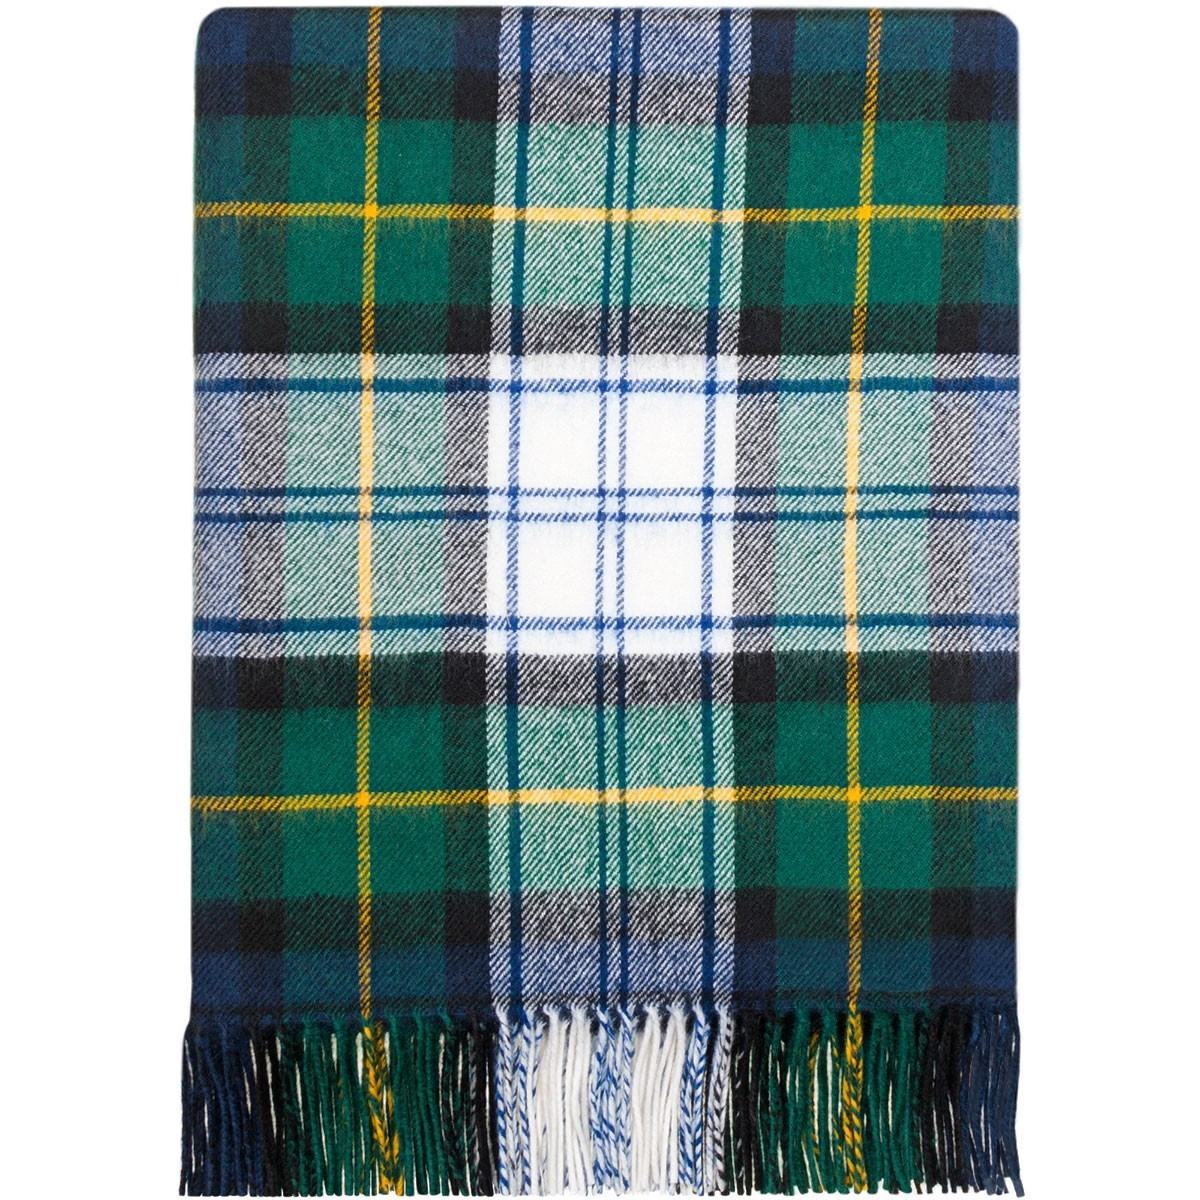 100% Lambswool Blanket in Dress Gordon by Lochcarron of Scotland